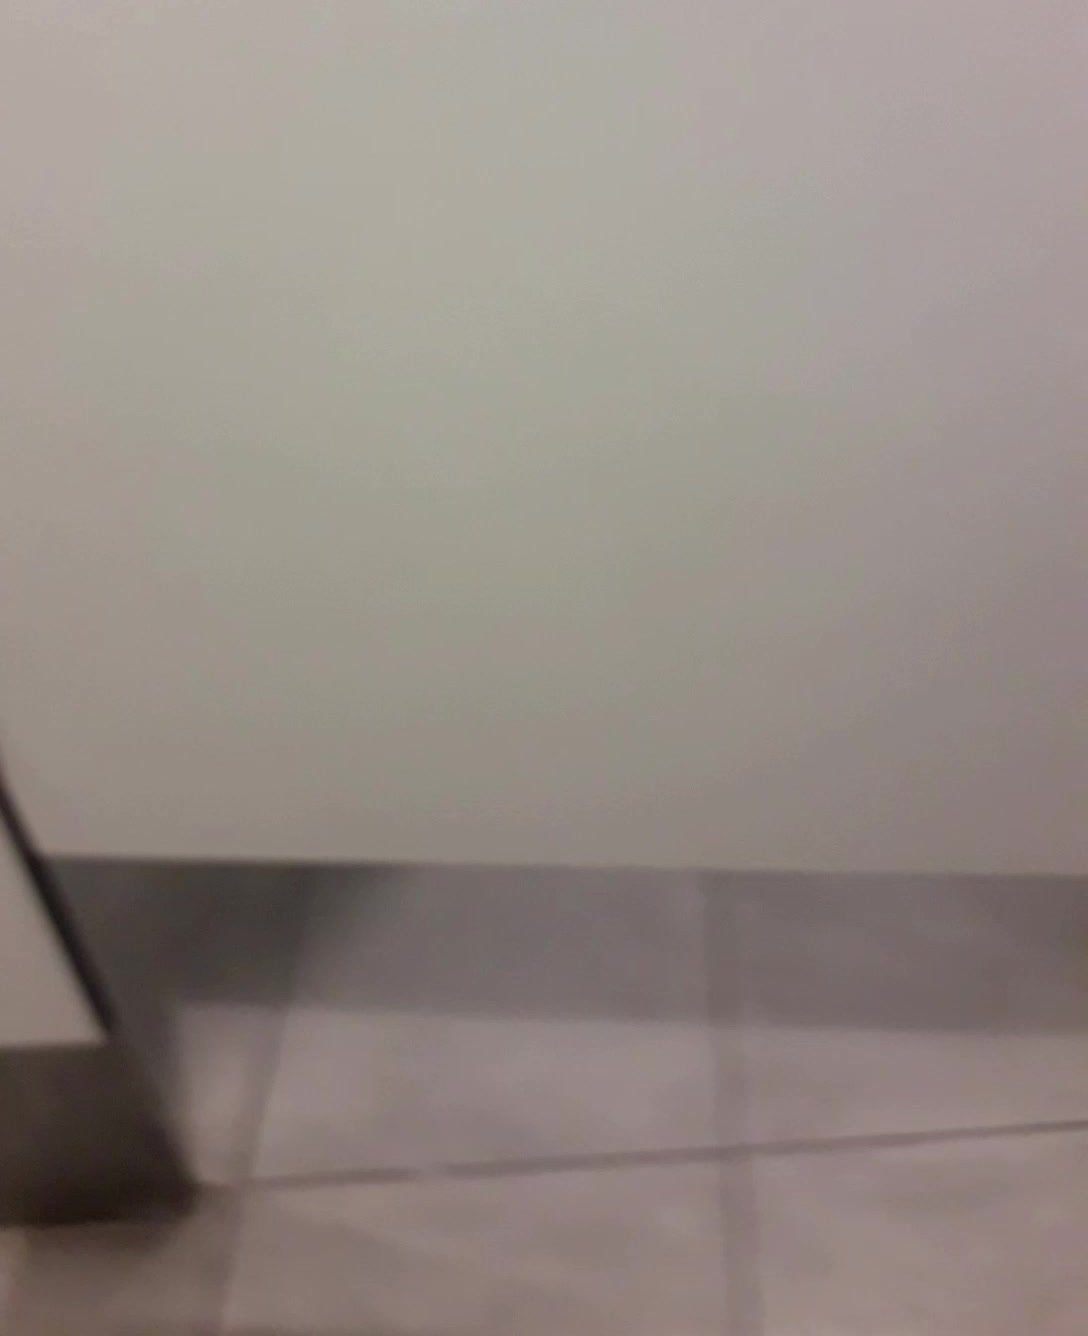 Strangers Opened The Public Toilet Door - video 18